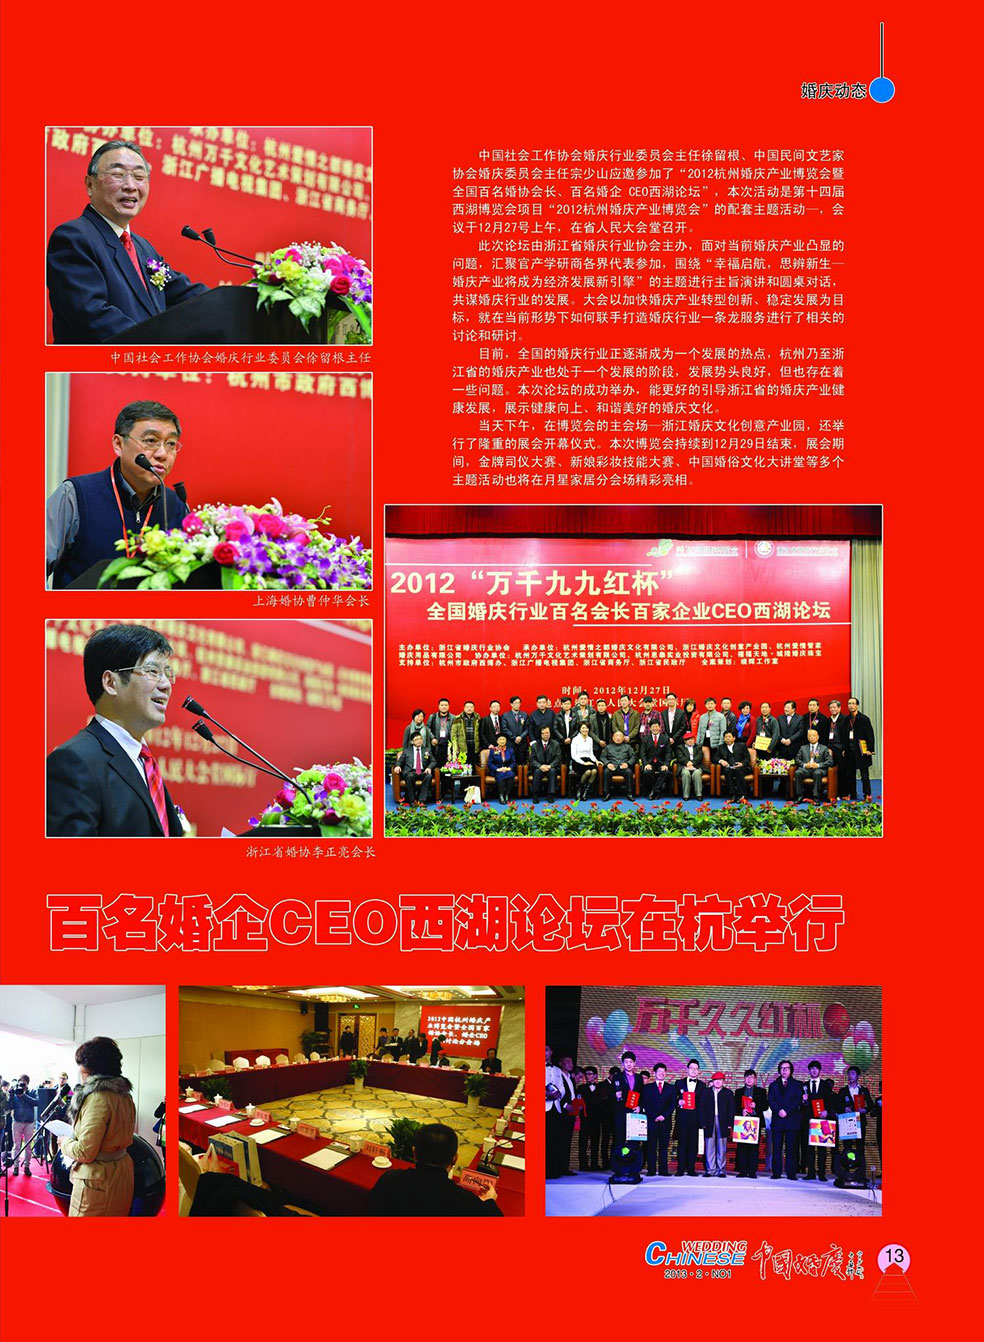 《中国婚庆》杂志2013年第一期（行业稀缺藏本）